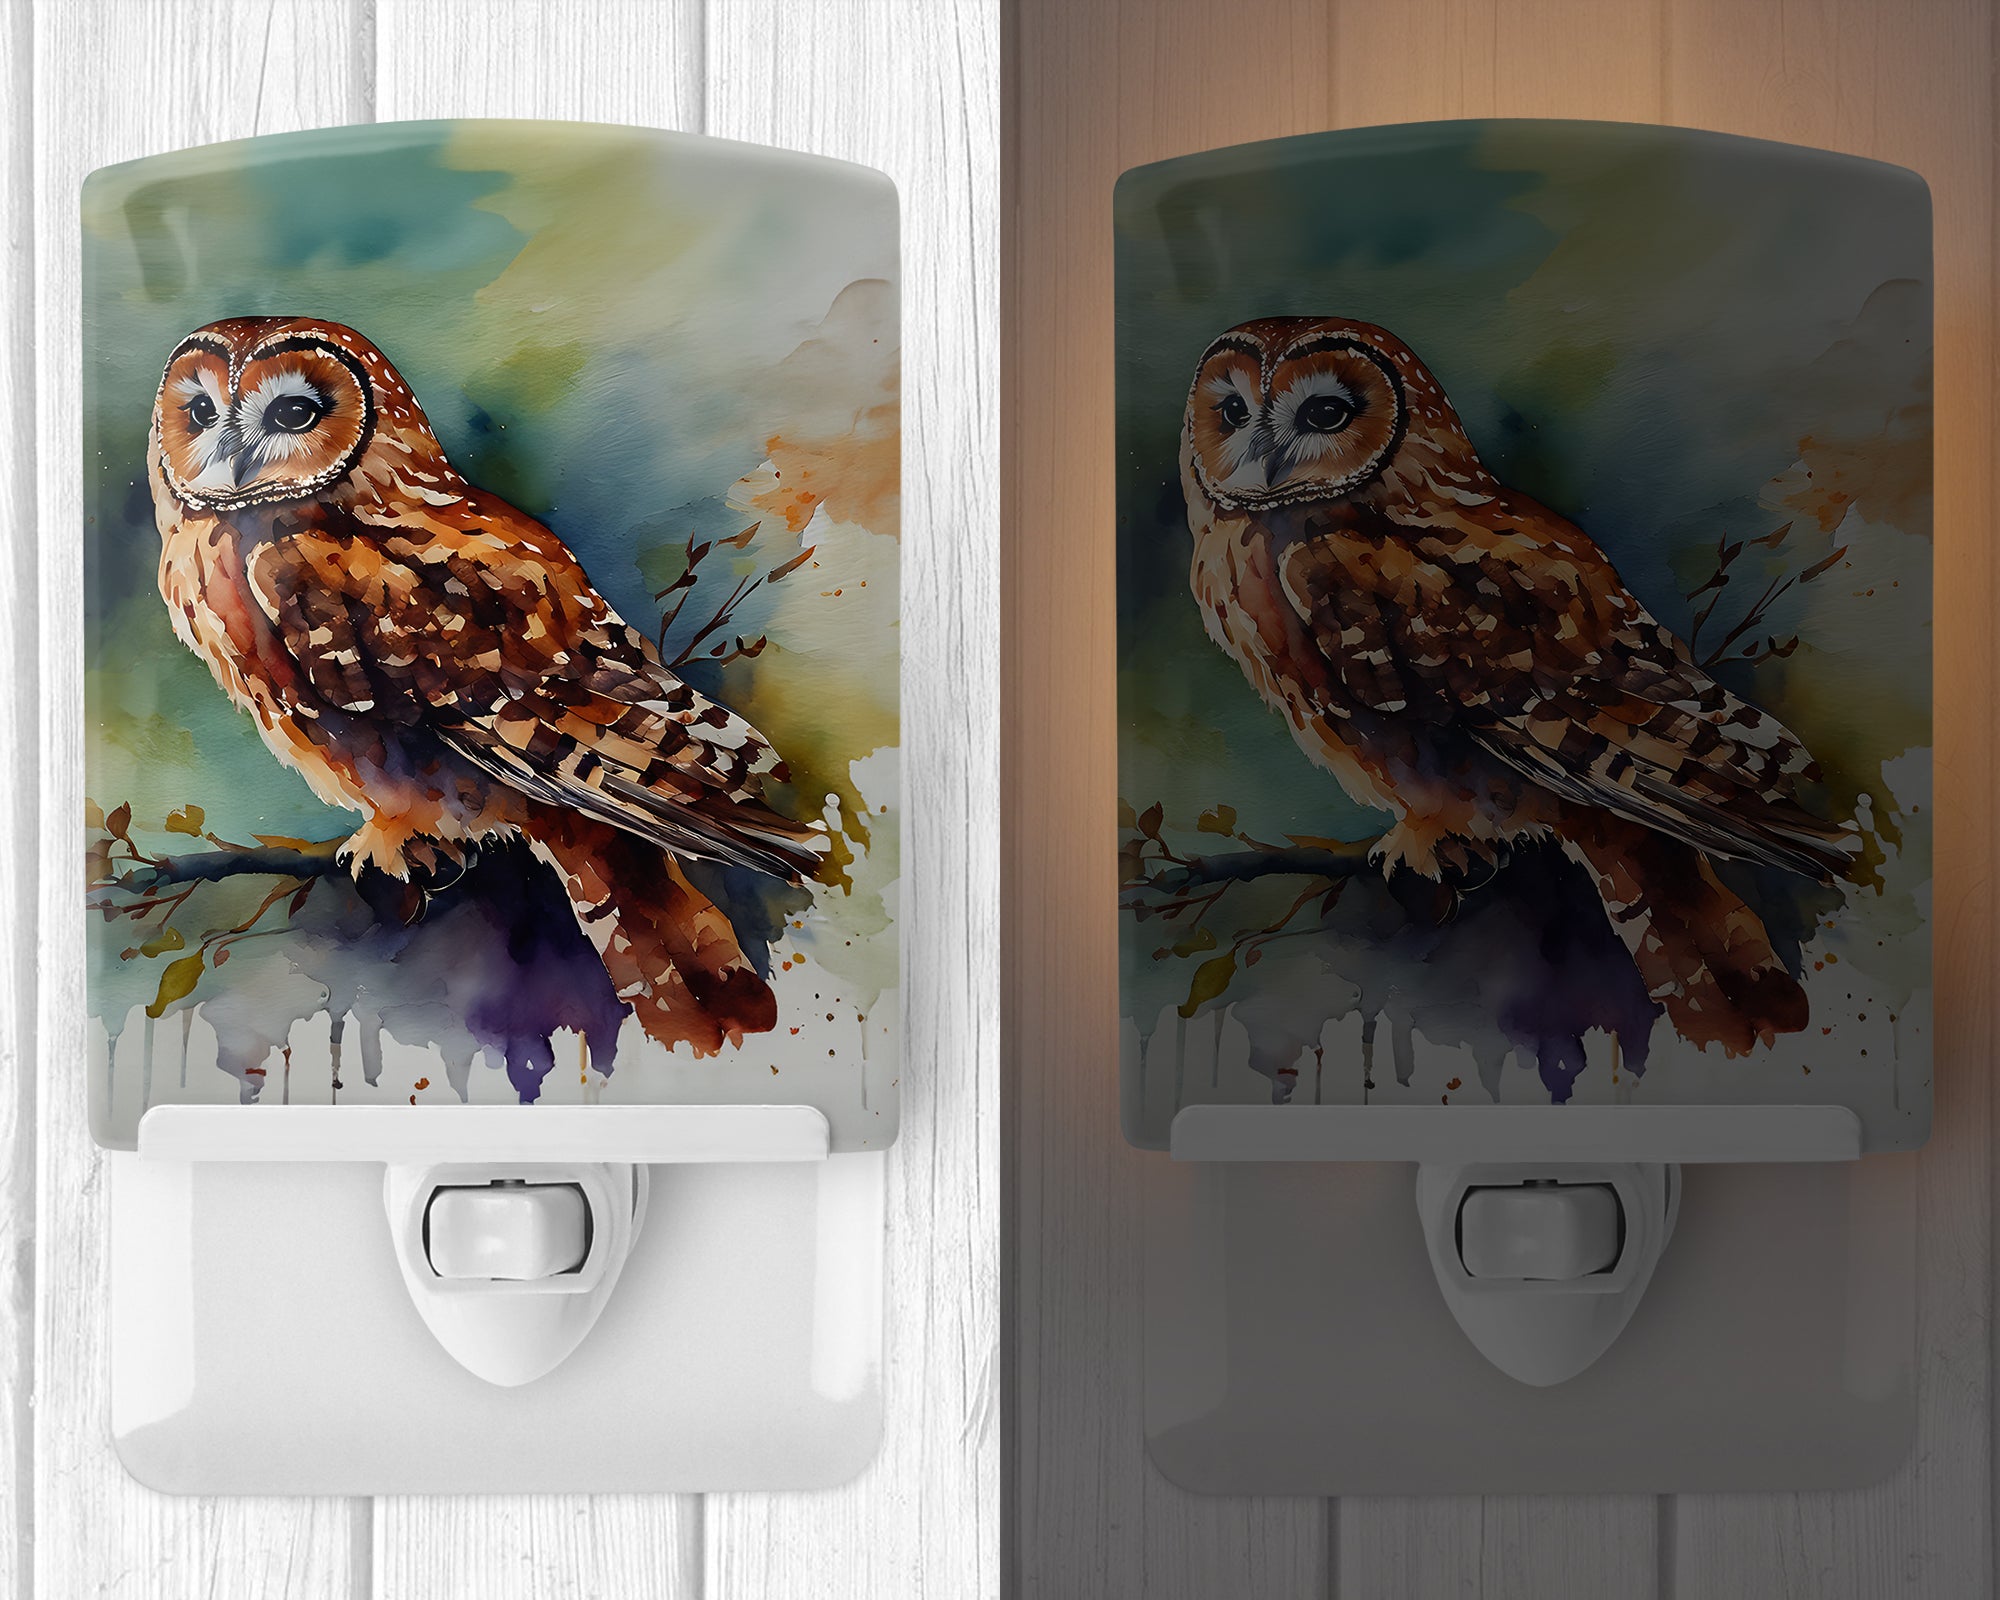 Buy this Tawny Owl Ceramic Night Light